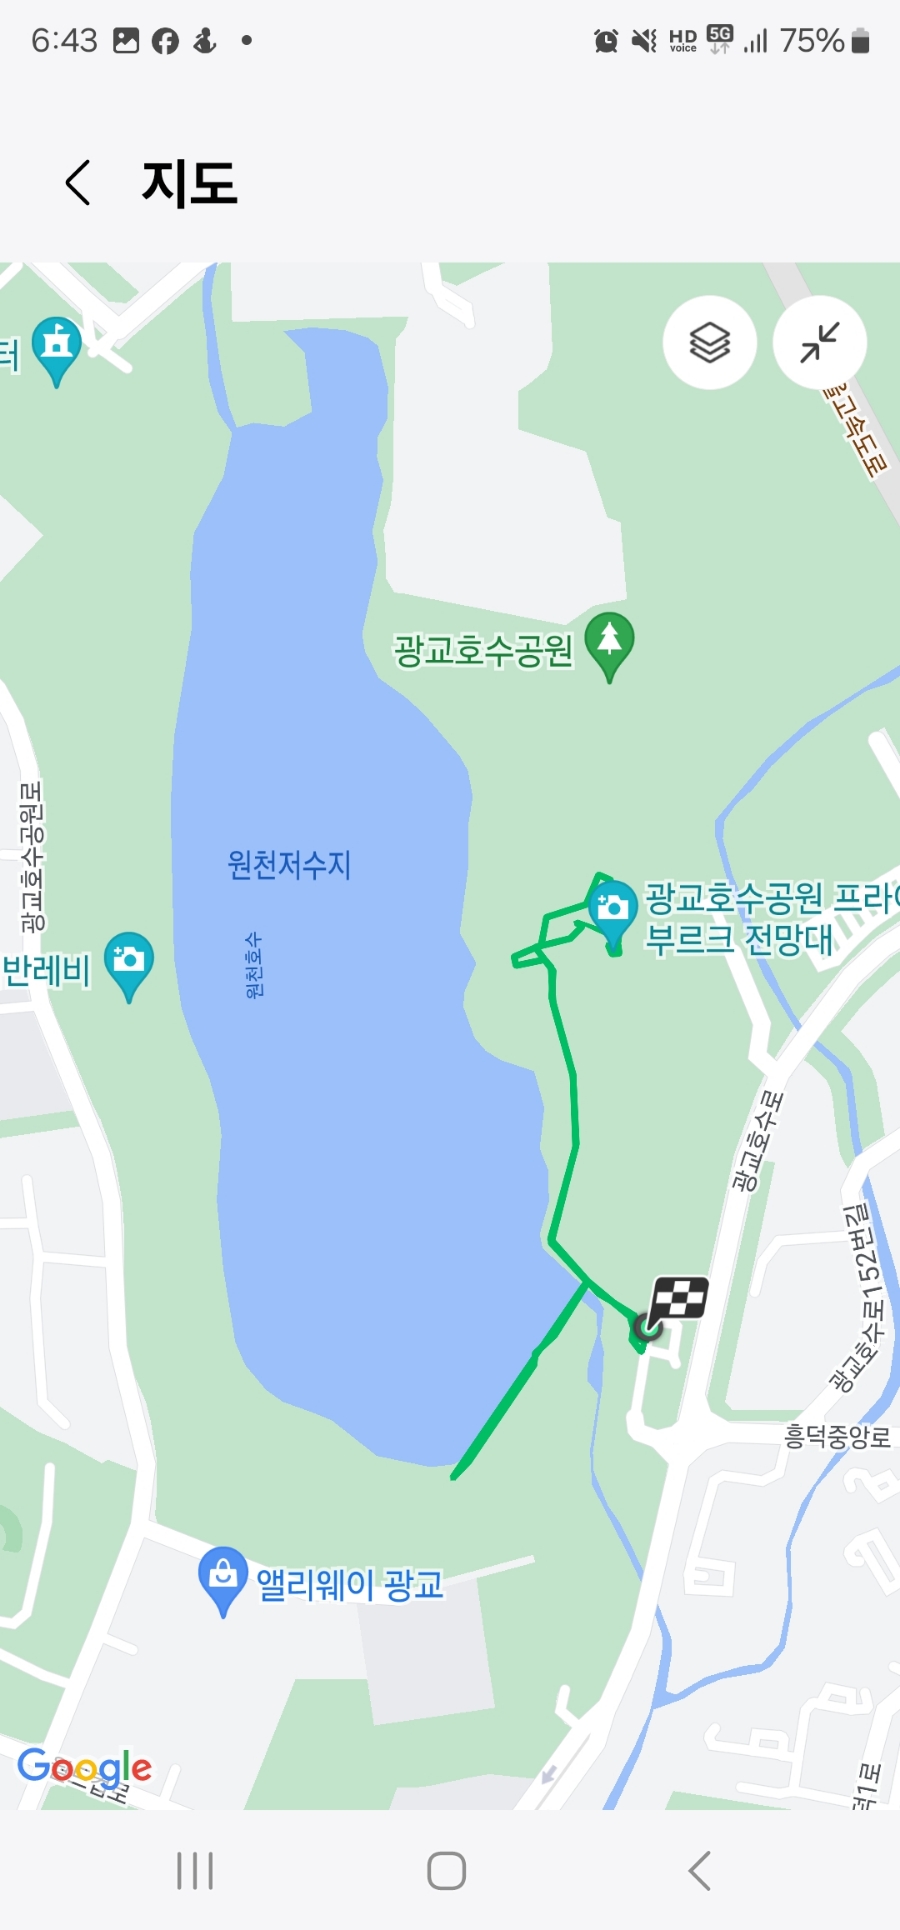 매화꽃 핀 광교호수공원 하루 30분 걷기